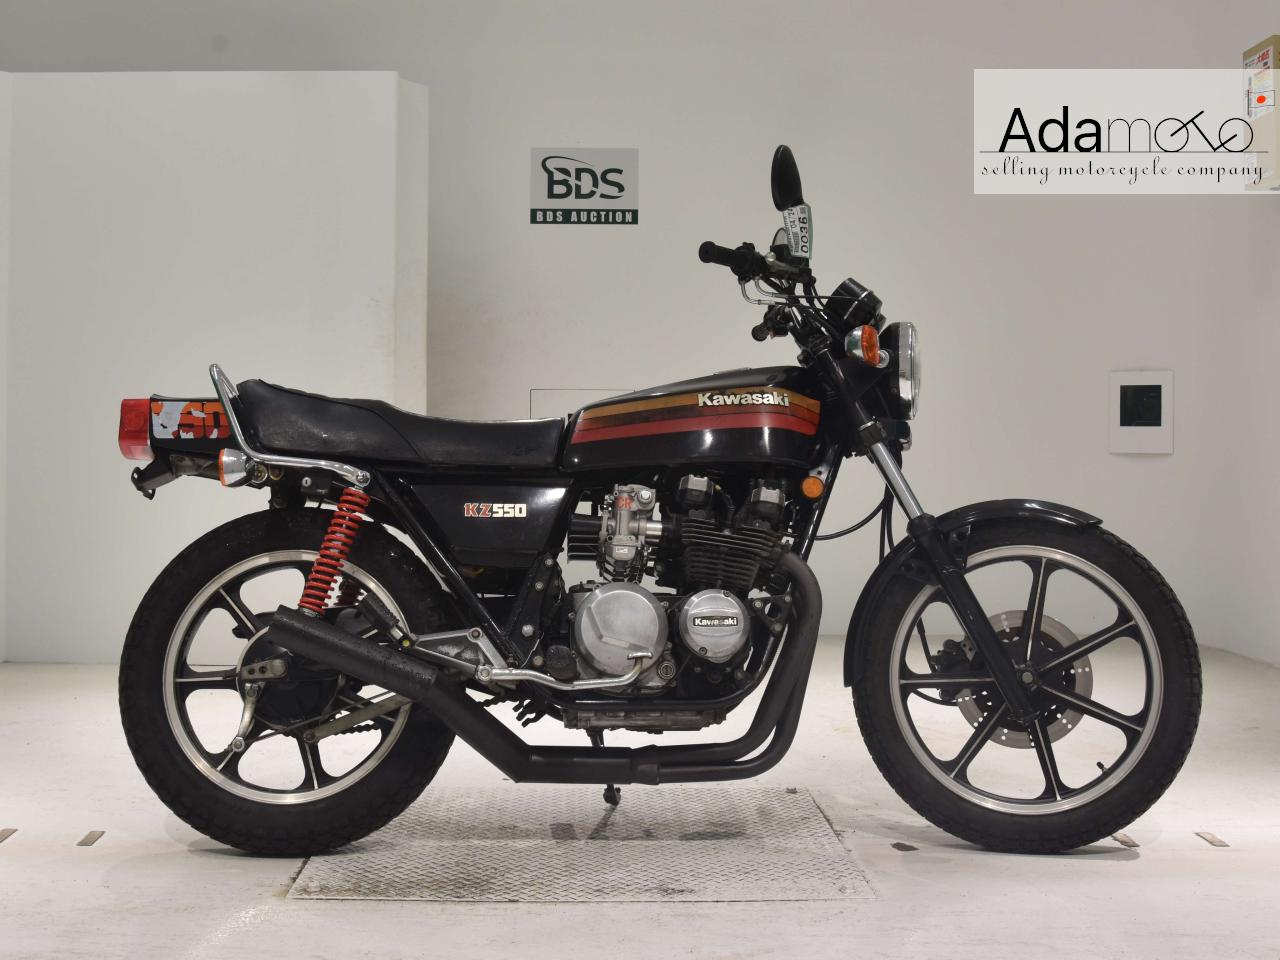 Kawasaki Z550 - Adamoto - Motorcycles from Japan